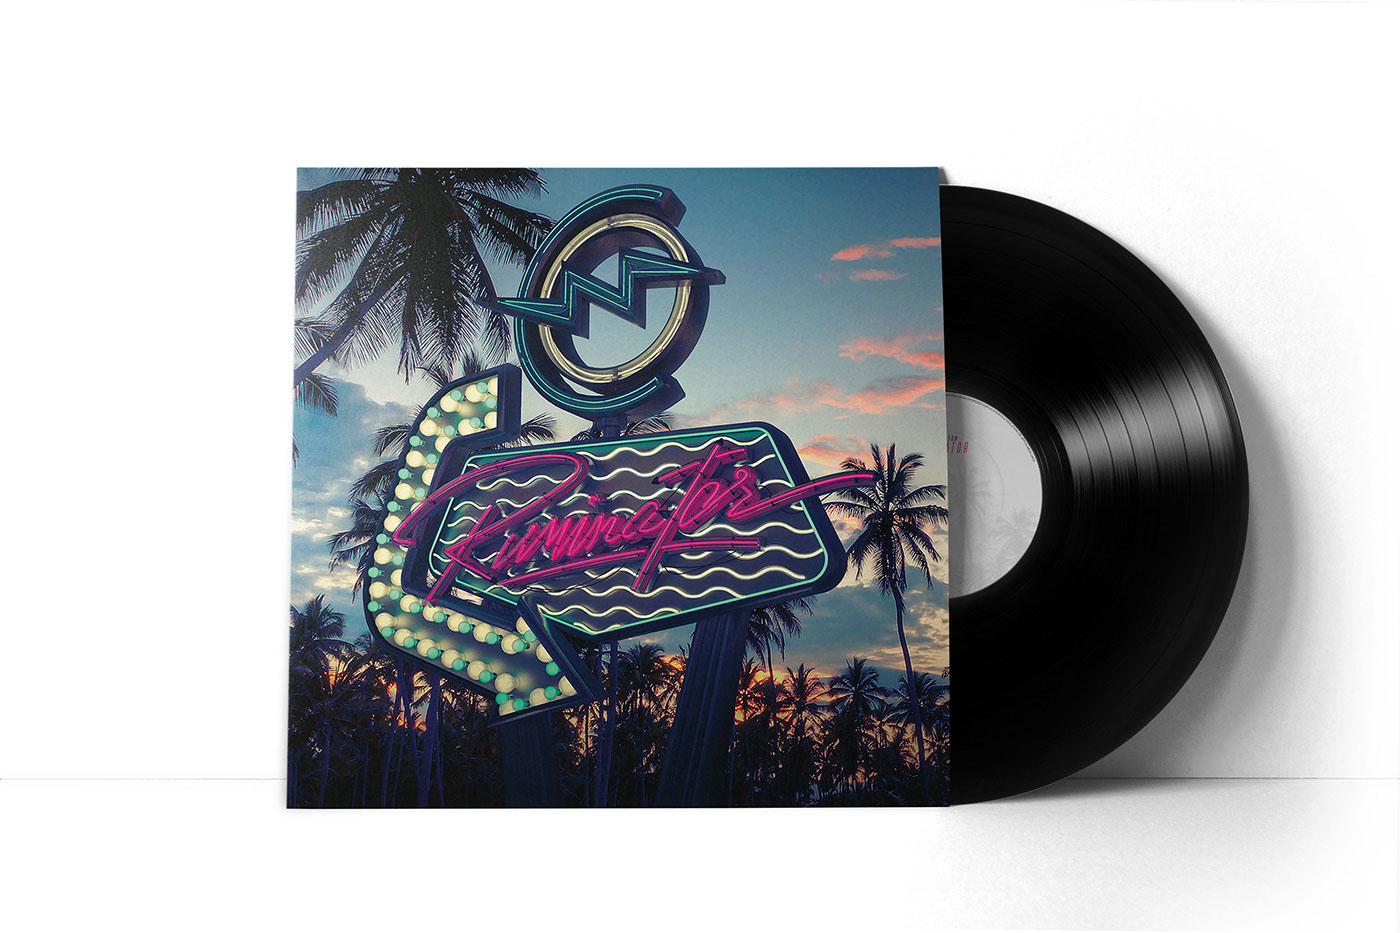 digipack band album art vinyl cinema 4d 3d render DUSK desert neon 80's vintage motel sign